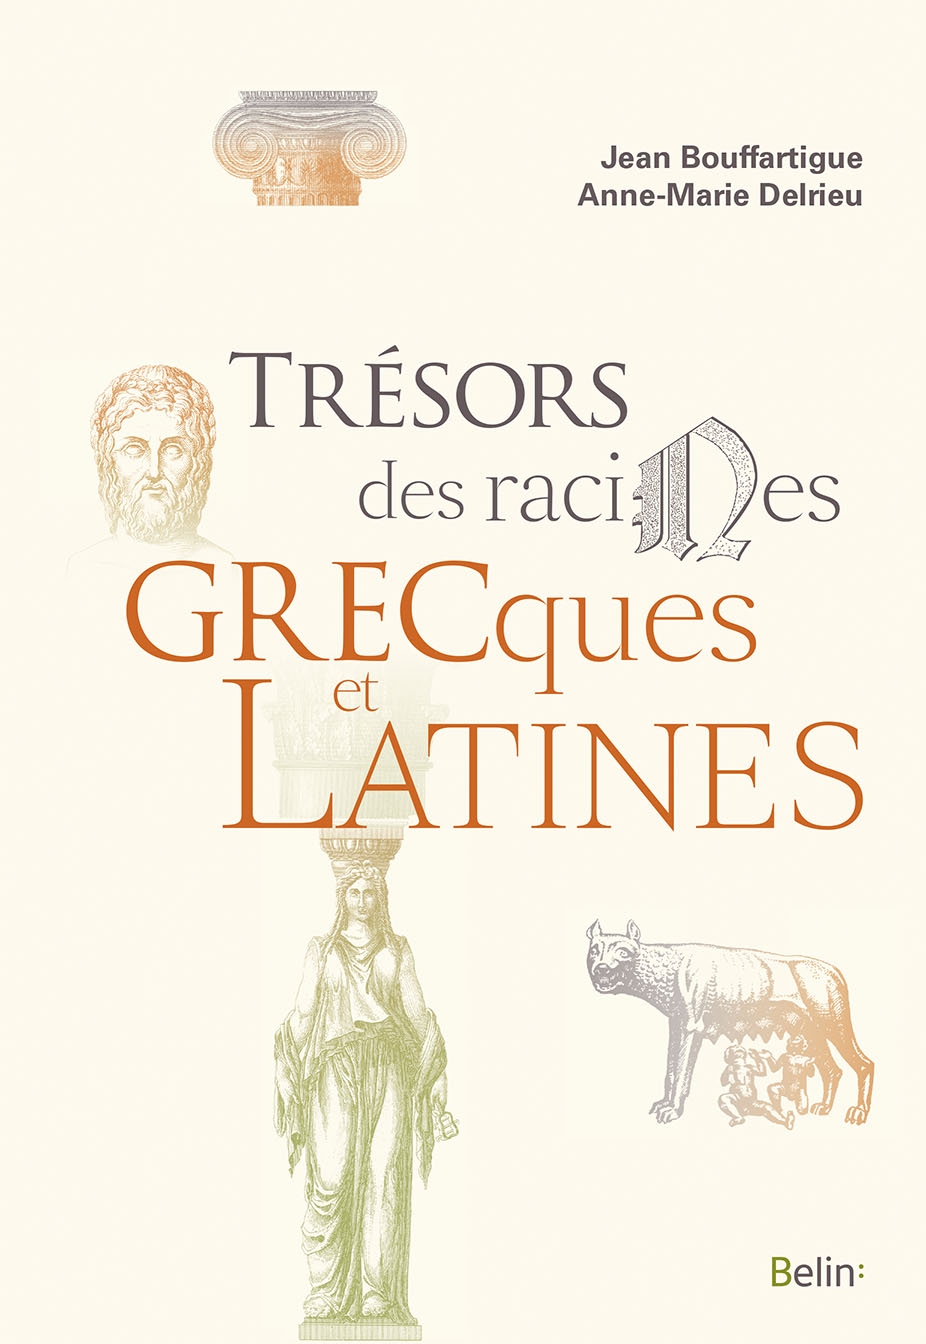 Trésors des racines grecques et latines, 2017, 448 p.